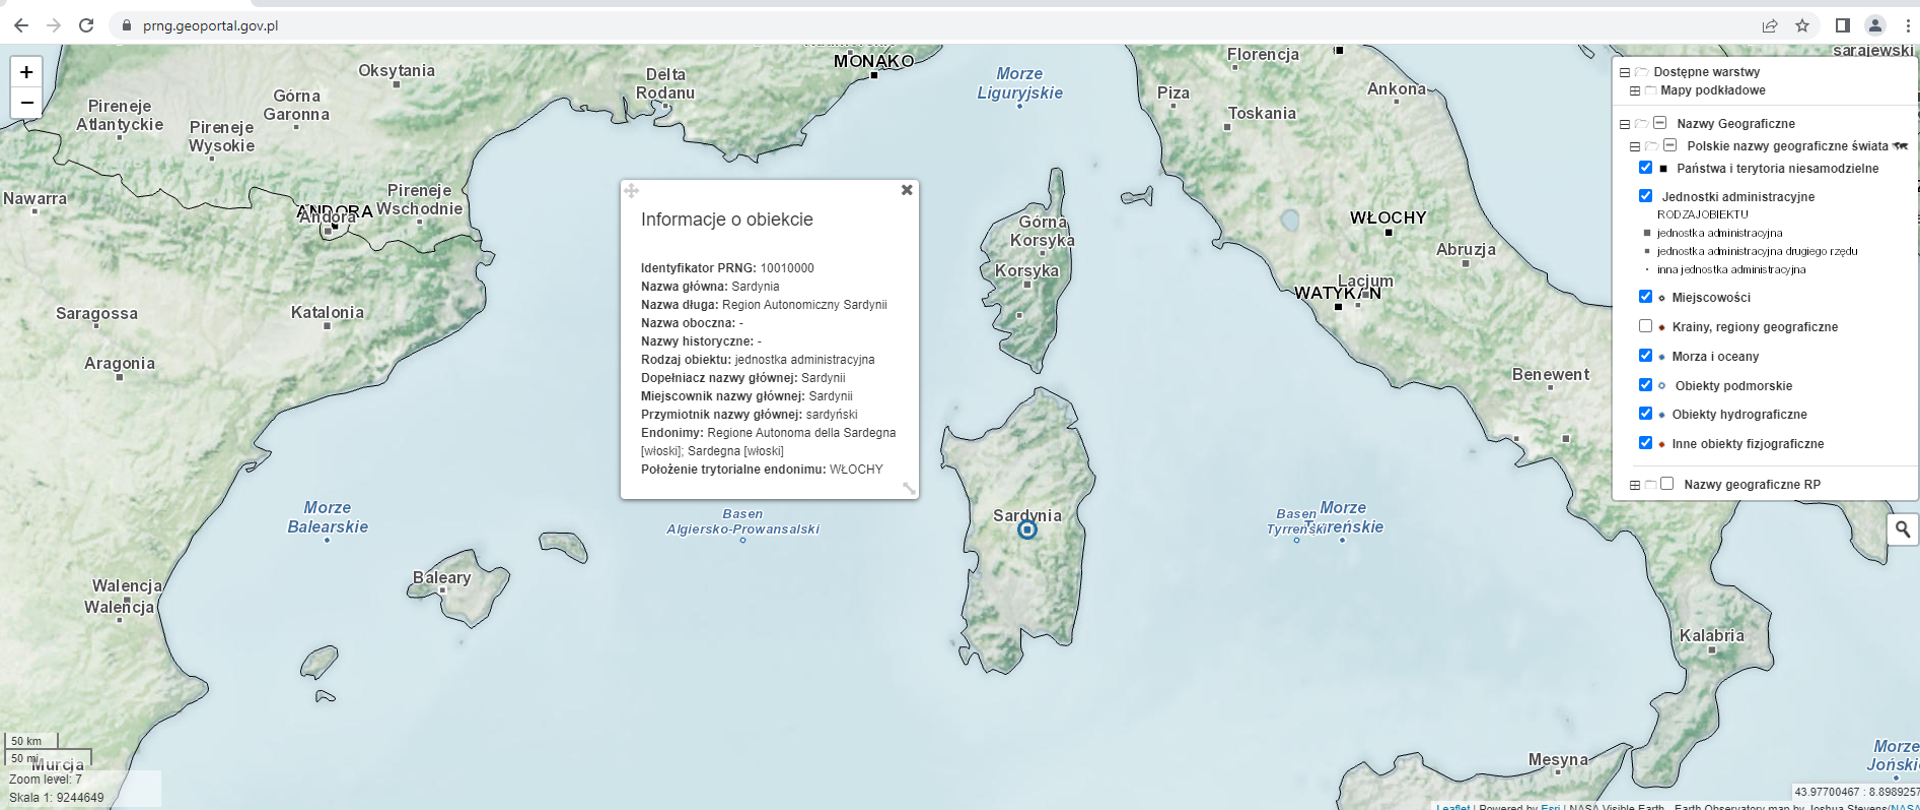 Ilustracja przedstawiająca zrzut ekranu z aplikacji mapowej prezentującej rejestr polskich nazw geograficznych świata ze zlokalizowaną nazwą Sardynia wraz z atrybutami. 